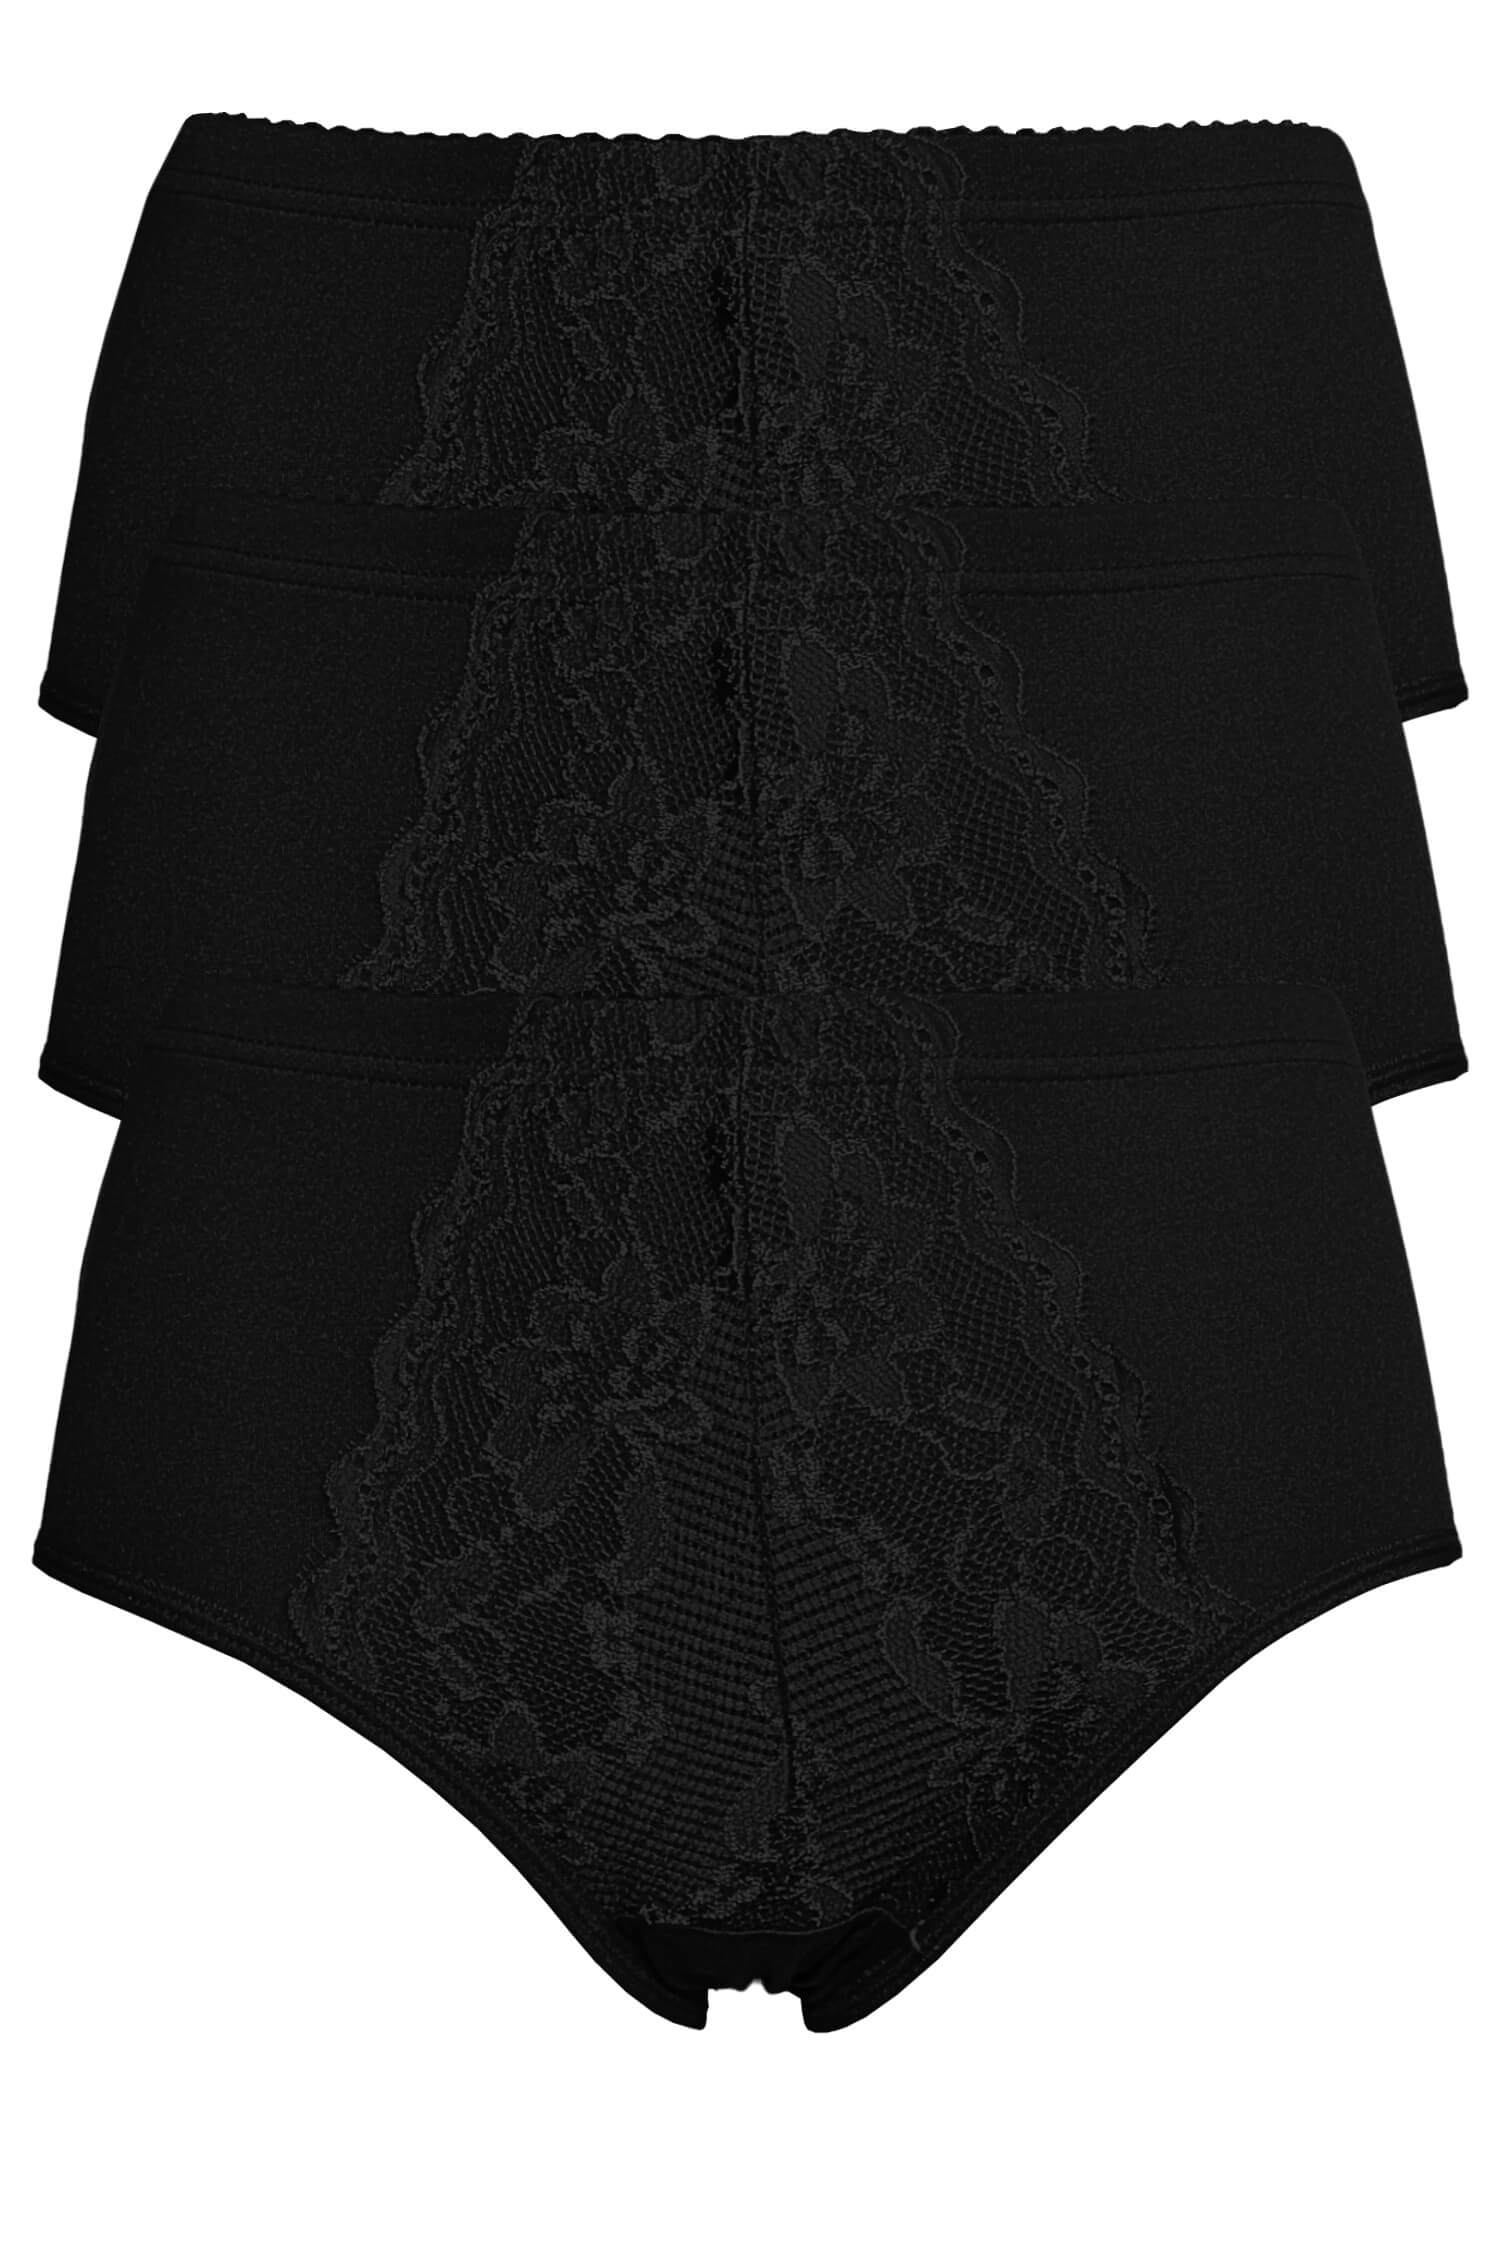 Jitka dámské bavlněné kalhotky s krajkou 9040 - 3 ks XL černá